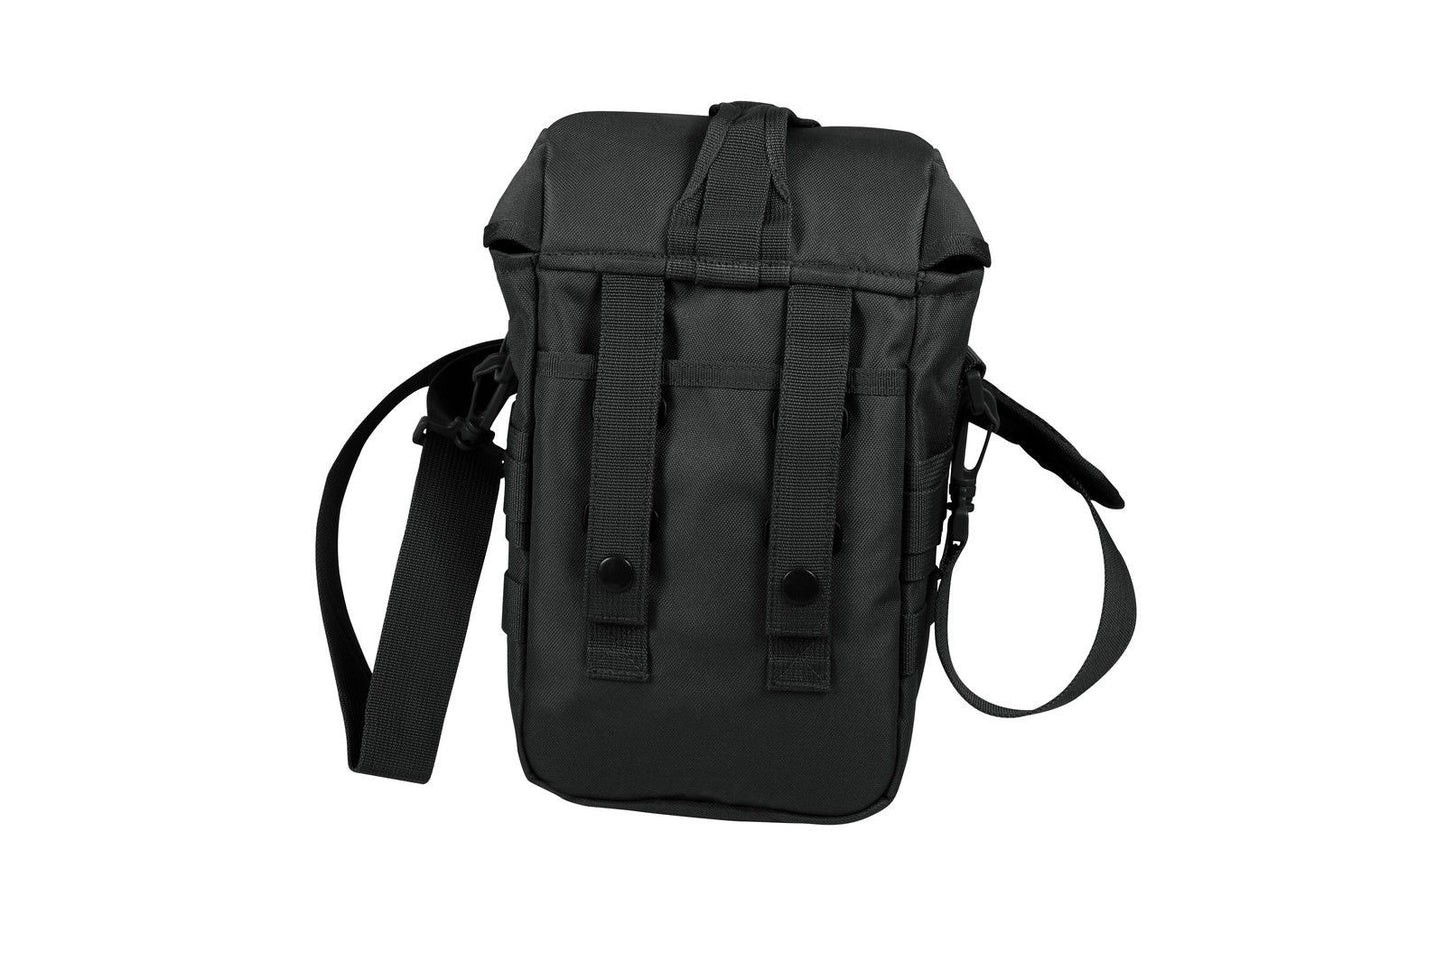 Flexipack Molle Tactical Shoulder Bag - Black